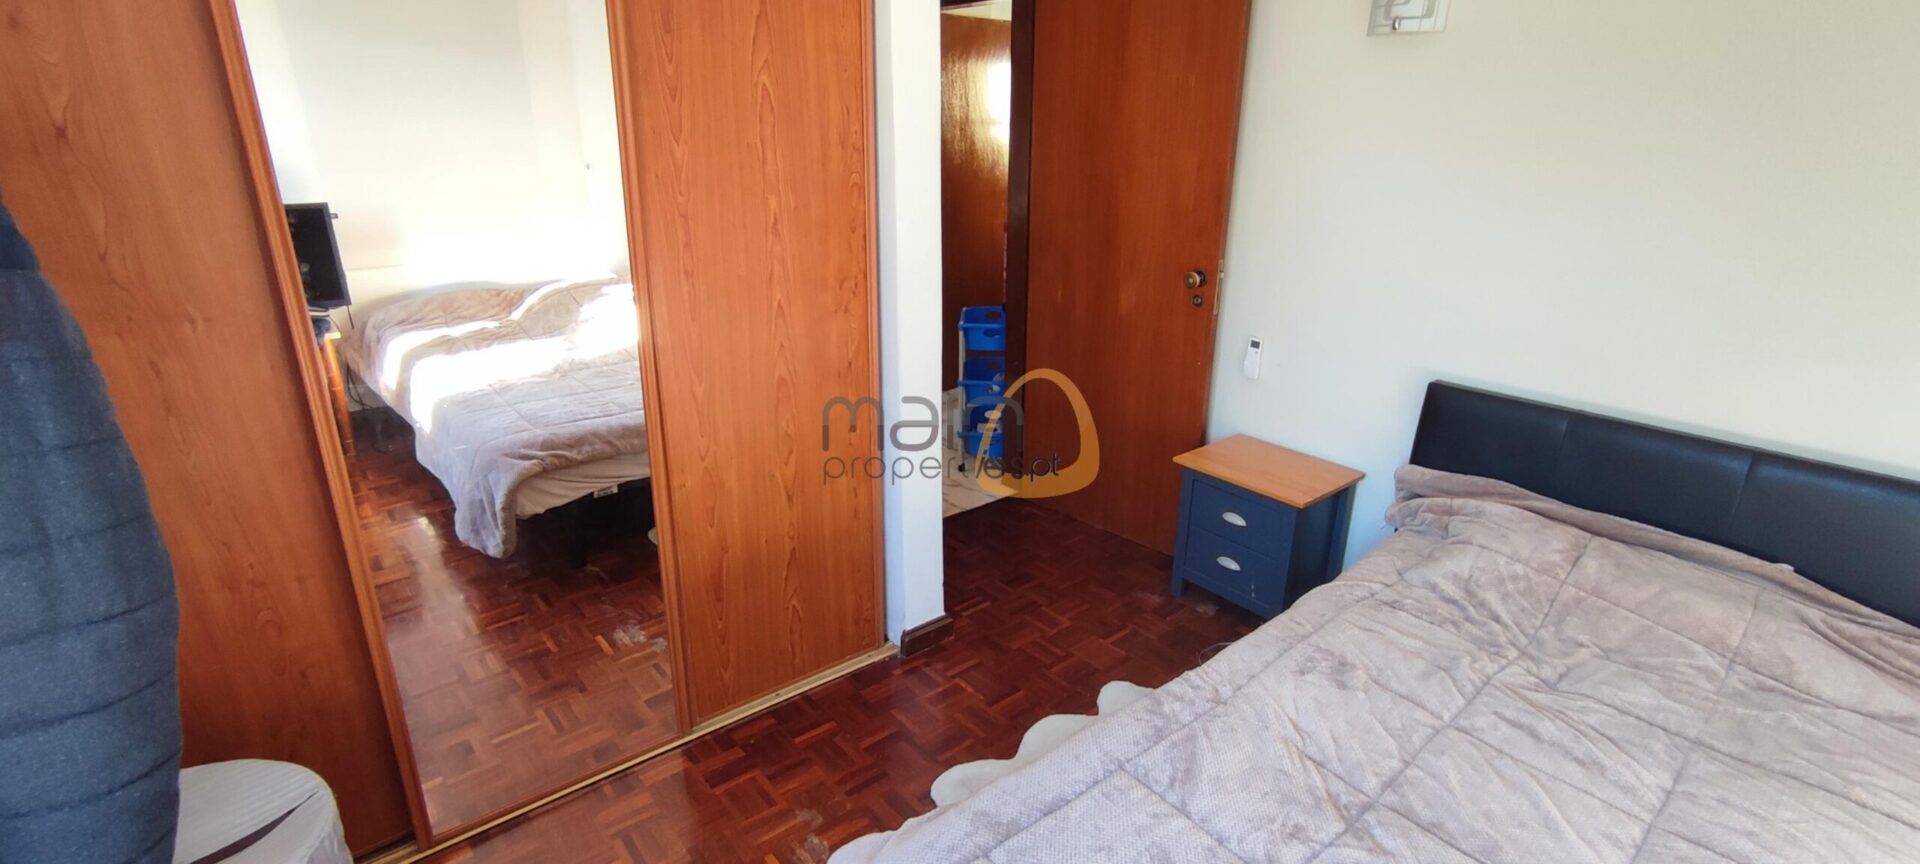 Apartamento com 1 quarto em Vilamoura (7)